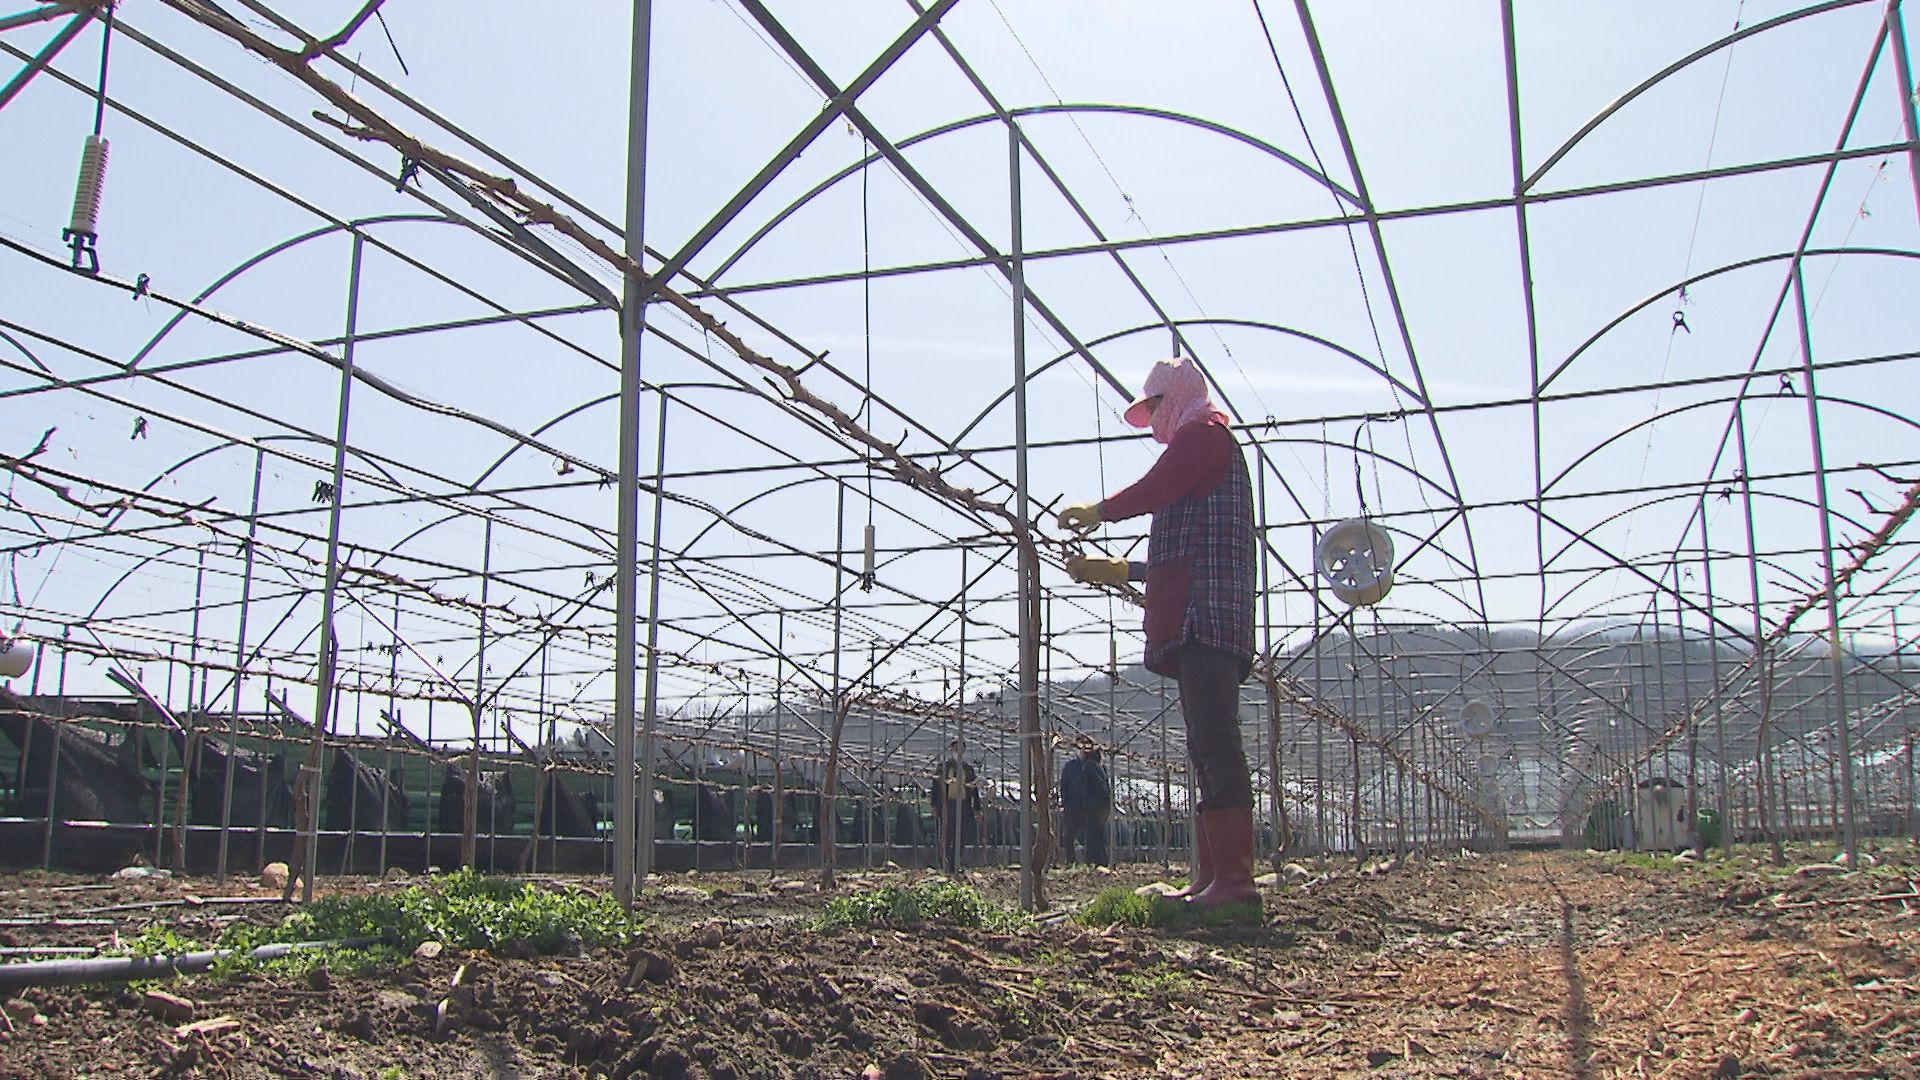  충북 영동군 매곡면의 한 샤인머스캣 농장. 농민 박우영 씨는 지난해에 이어 올해 2명의 외국인 계절 근로자를 신청했지만, 기약이 없는 상태다.